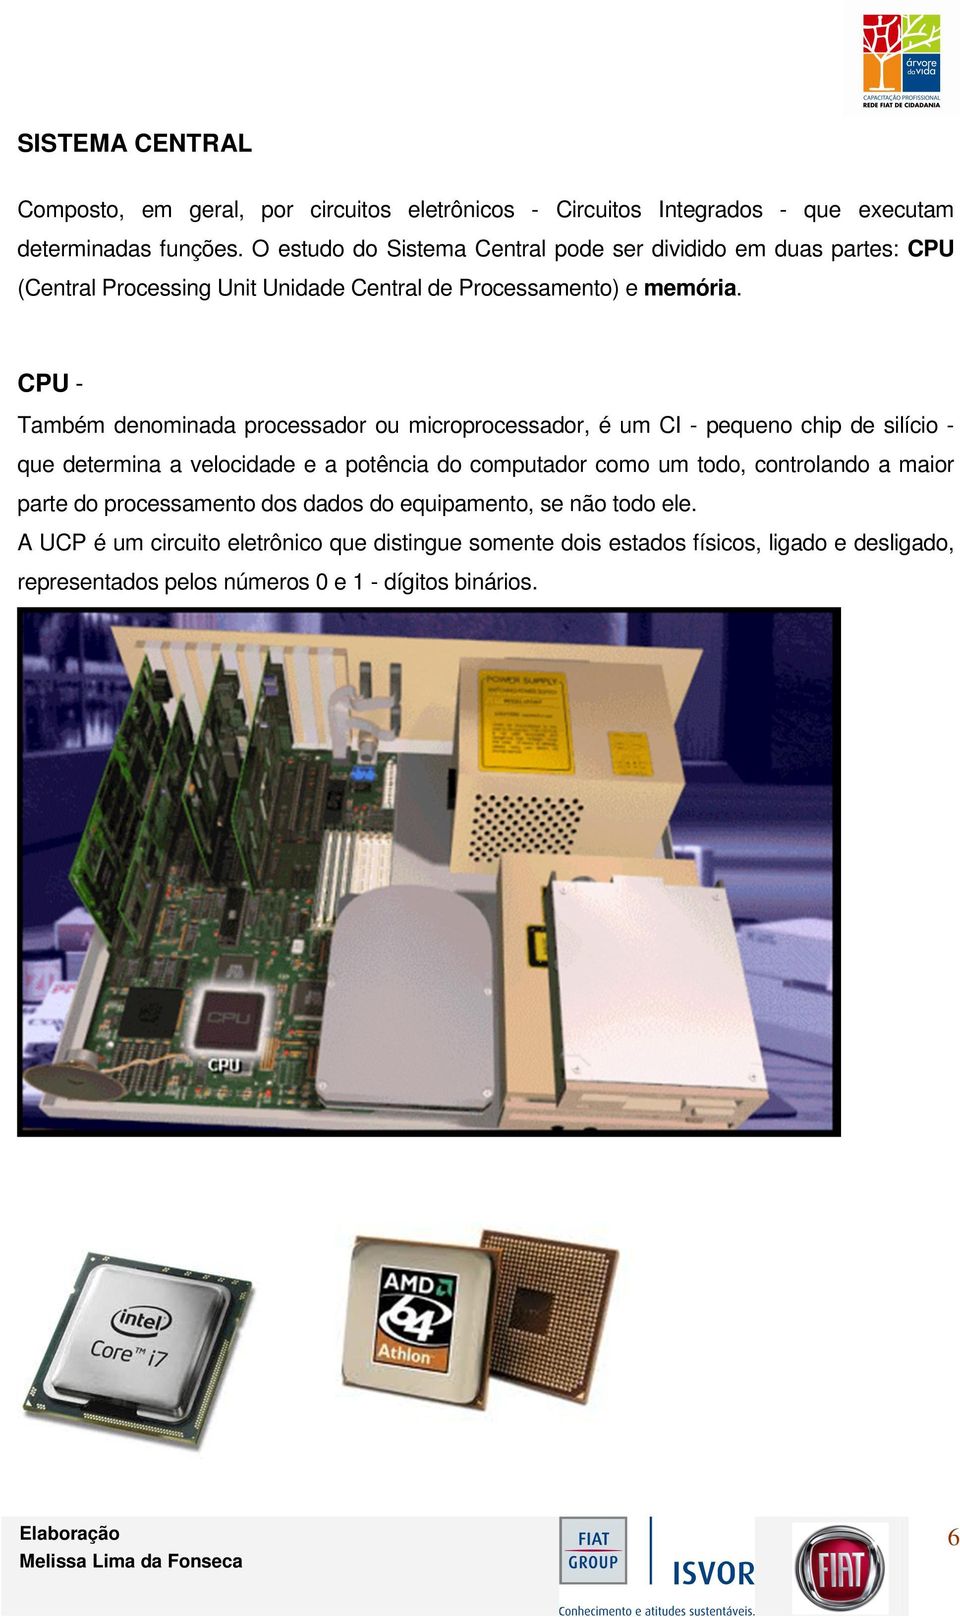 CPU - Também denominada processador ou microprocessador, é um CI - pequeno chip de silício - que determina a velocidade e a potência do computador como um todo,